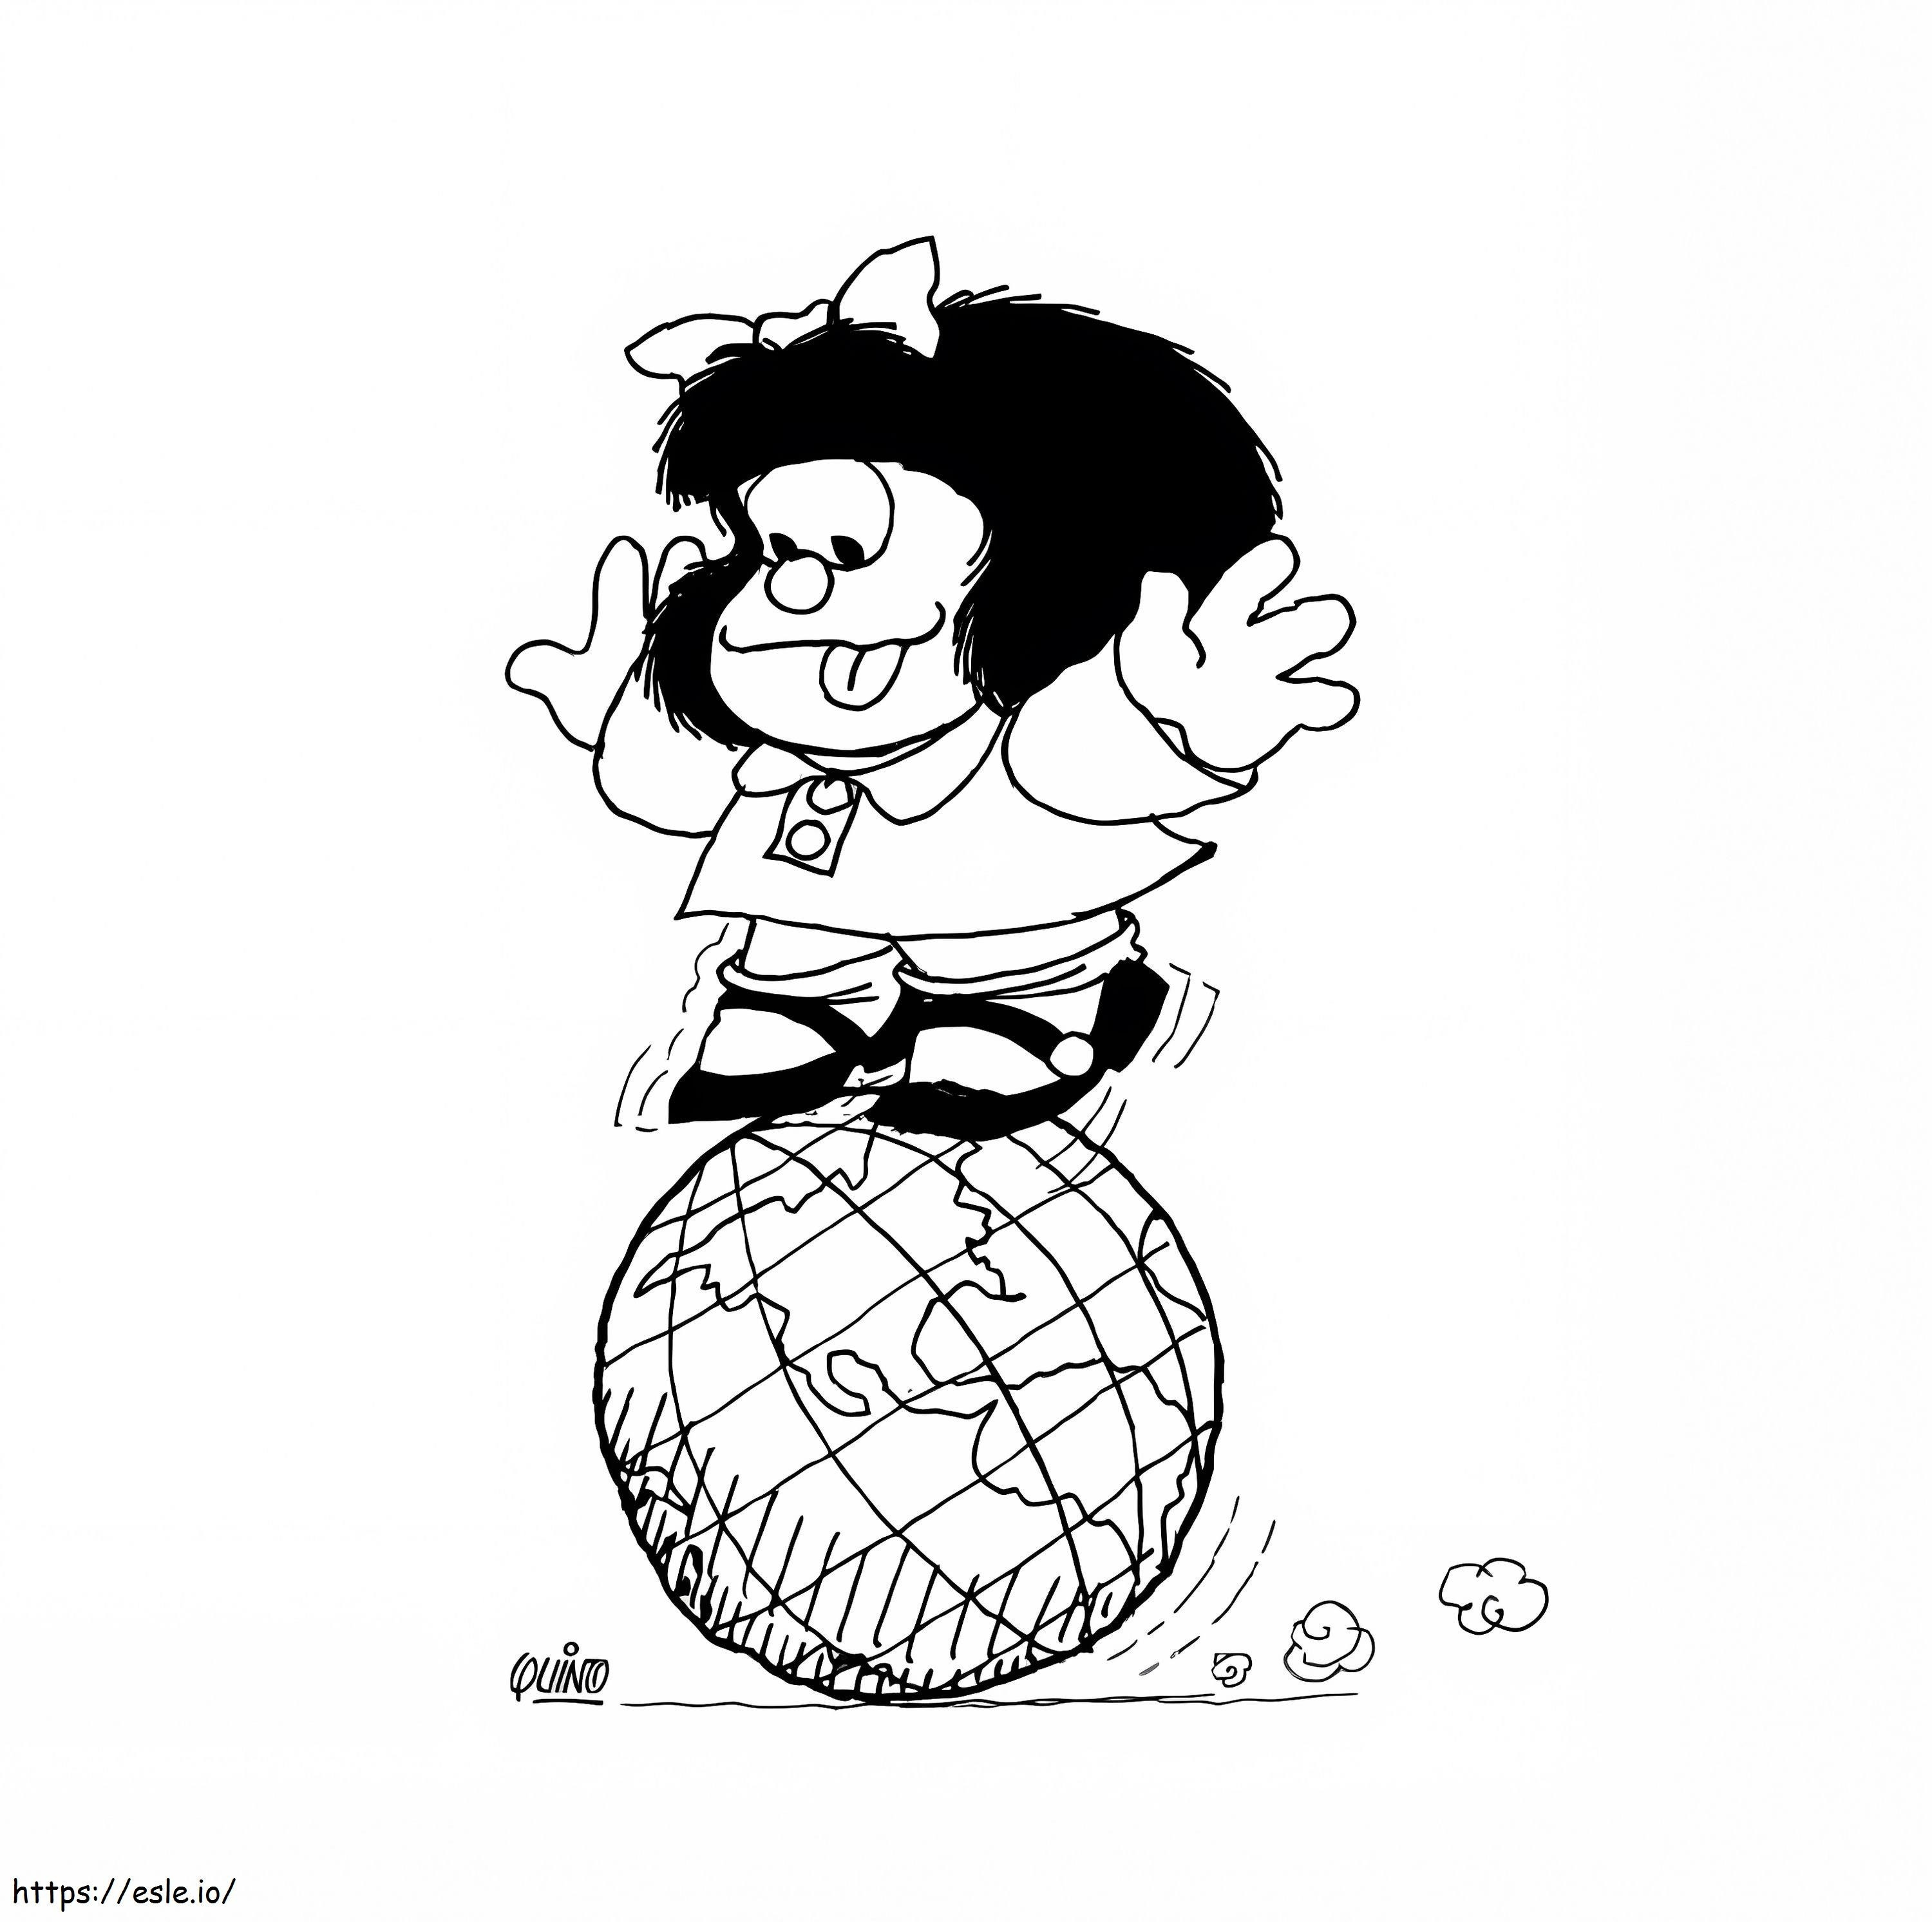 Mafalda i kula ziemska kolorowanka